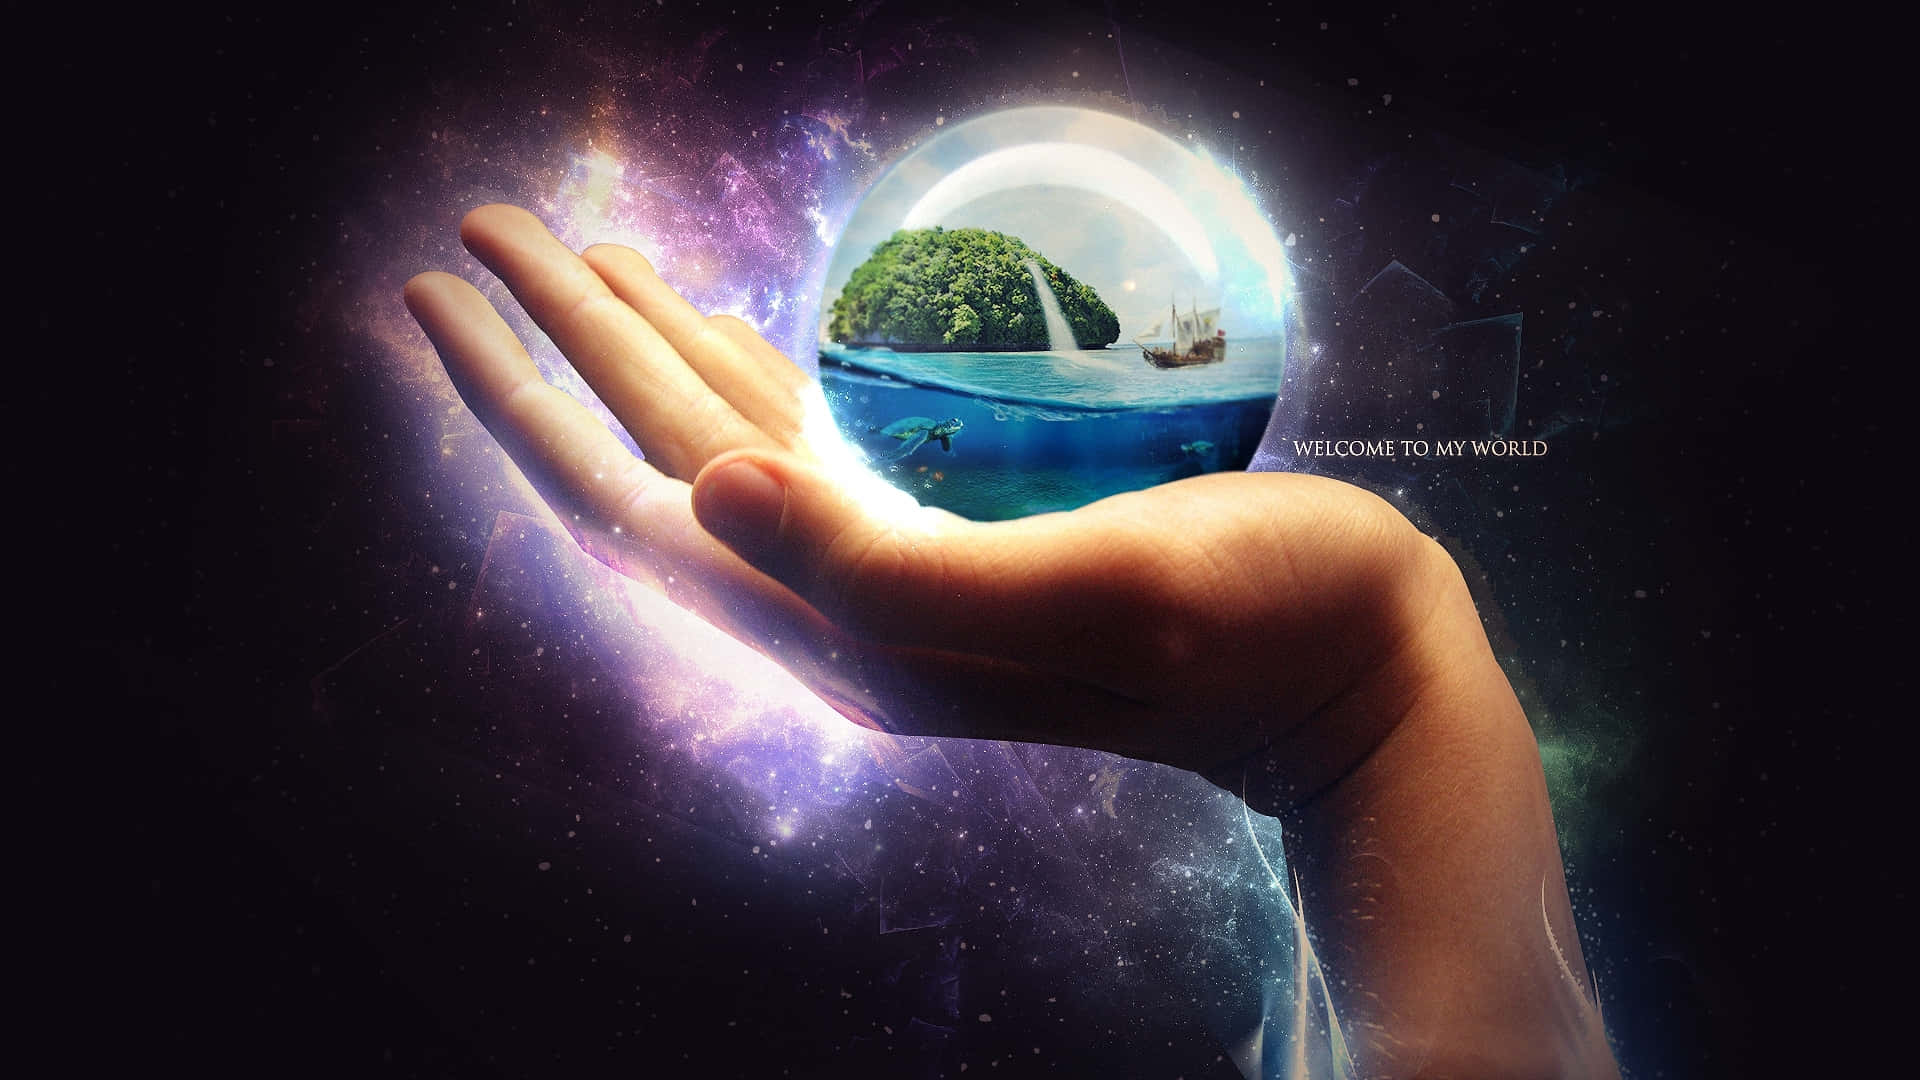 En hånd holder et glasbold med en planet indeni Wallpaper